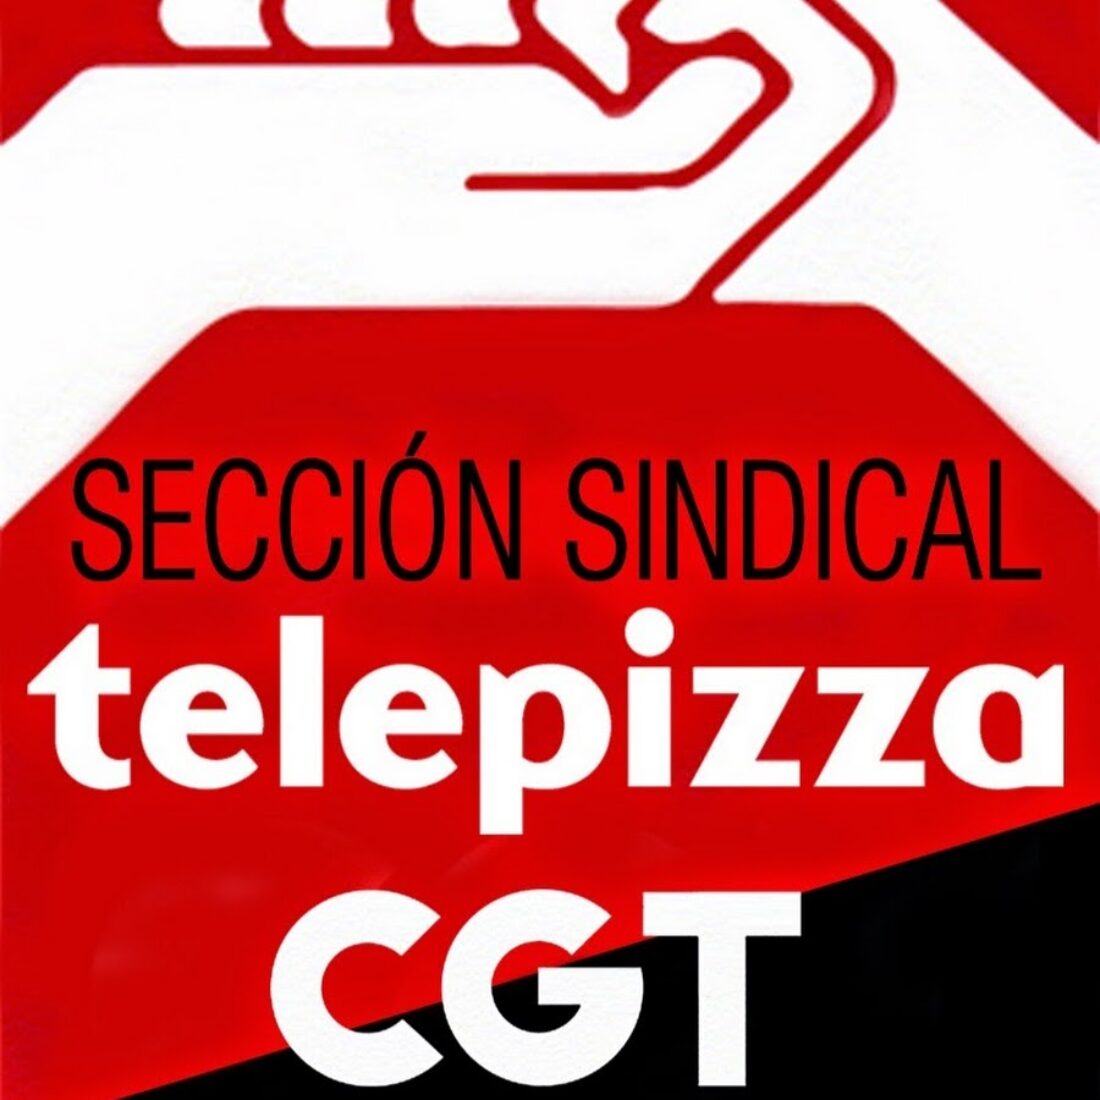 Telepizza-QSR estafa a dos trabajadoras entre seiscientos y mil euros y se niega a pagar los atrasos y el plus de transporte